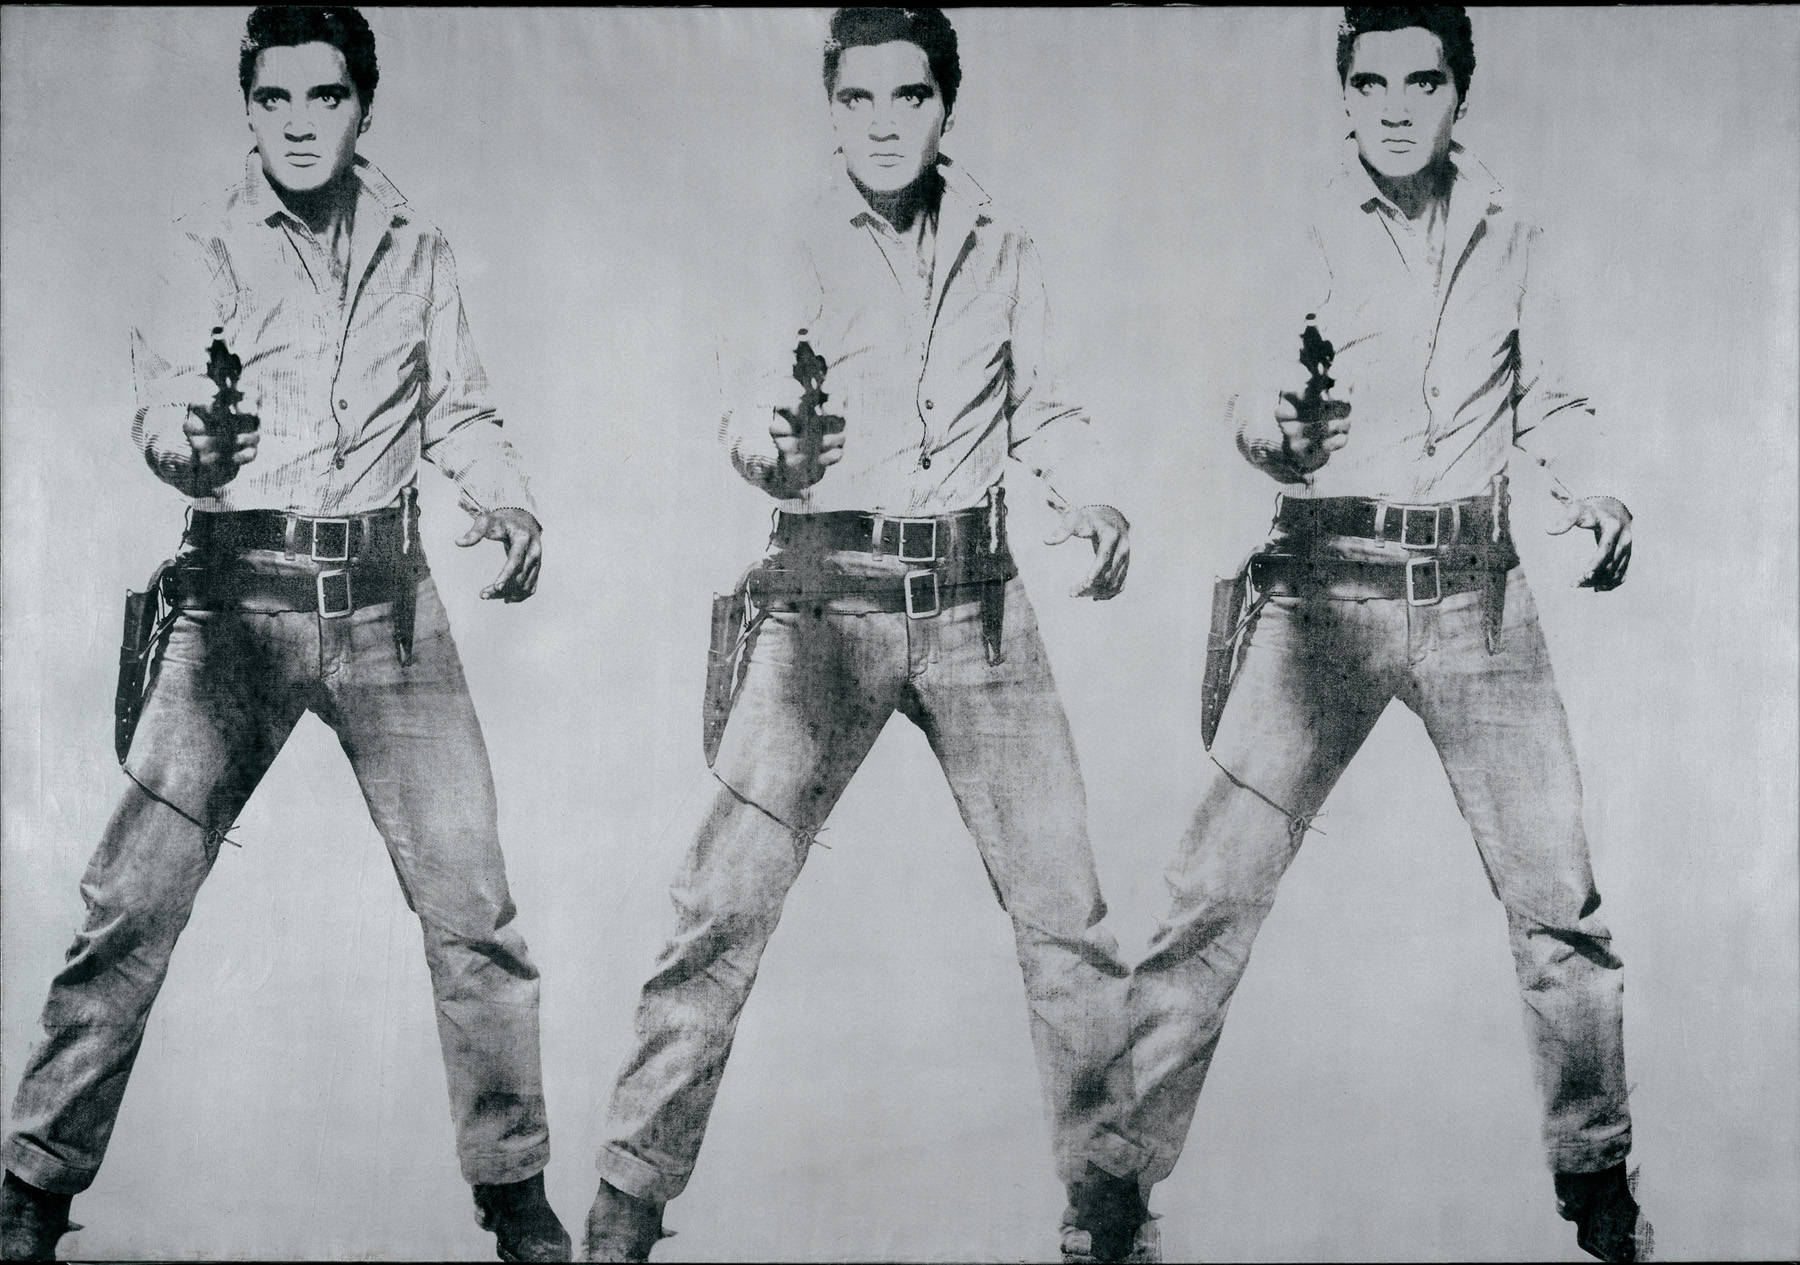 Triple Elvis by Andy Warhol - 1963 - 208.3 x 299.7 cm SFMOMA Museo de Arte Moderno de San Francisco